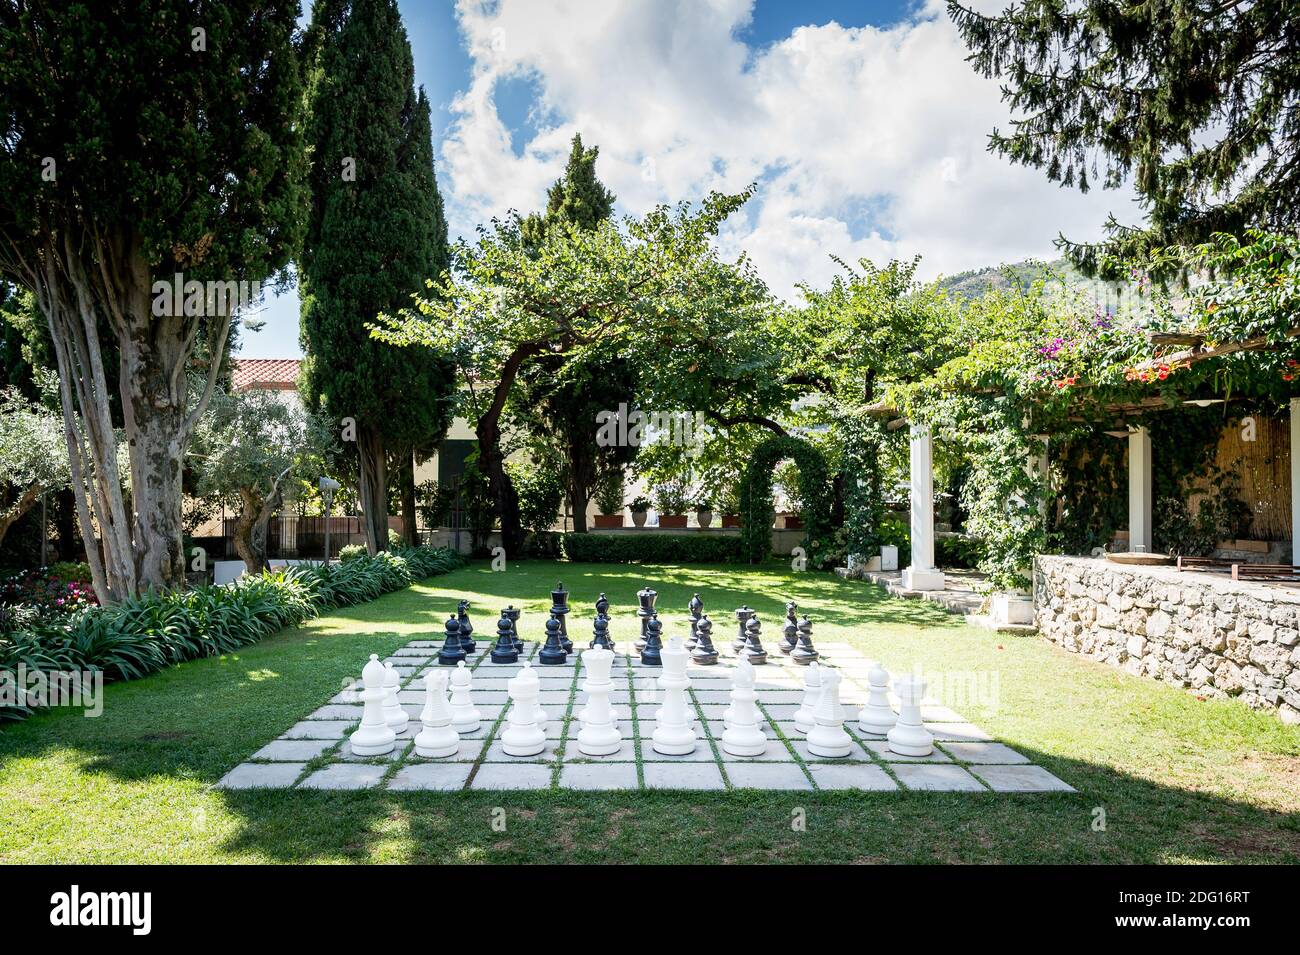 Le magnifique jardin de la Villa Eva dans la ville de Ravello Italie. Un lieu de mariage renommé et une villa privée. Jeu d'échecs géant. Banque D'Images